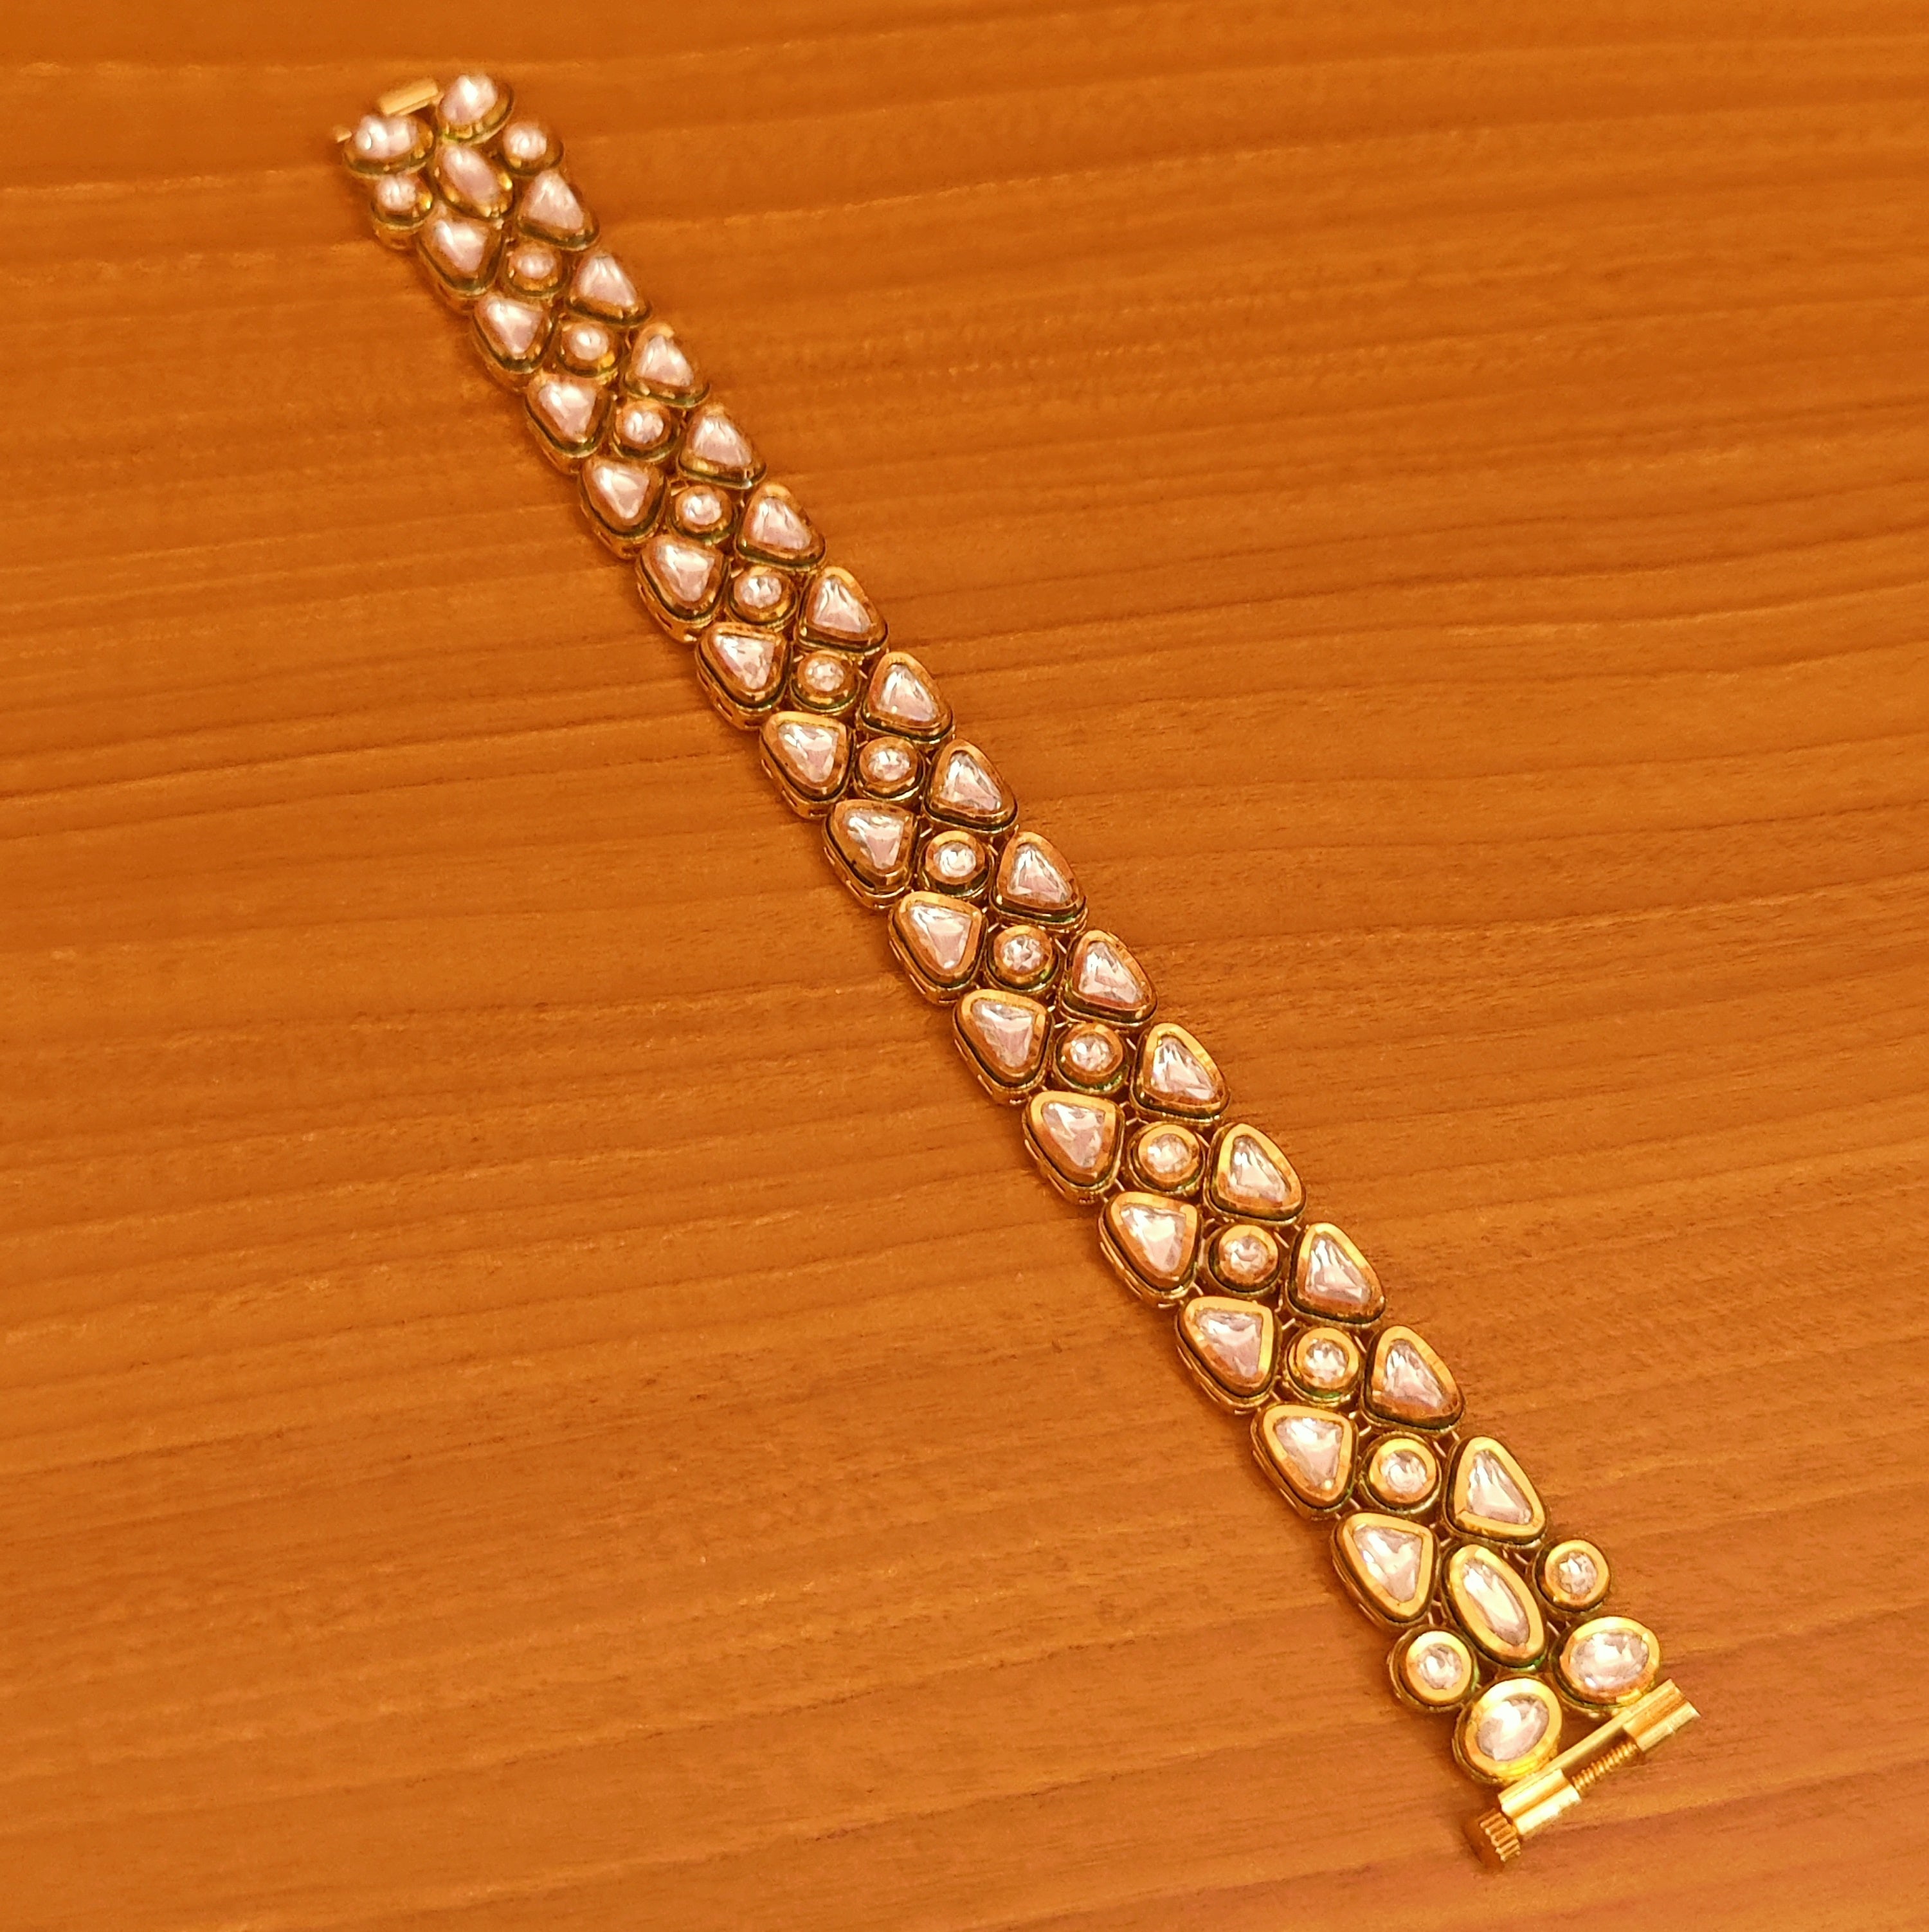 Buy Real Gold Design Forming Gold Bracelet Design Men Wedding Jewellery  Collection Online